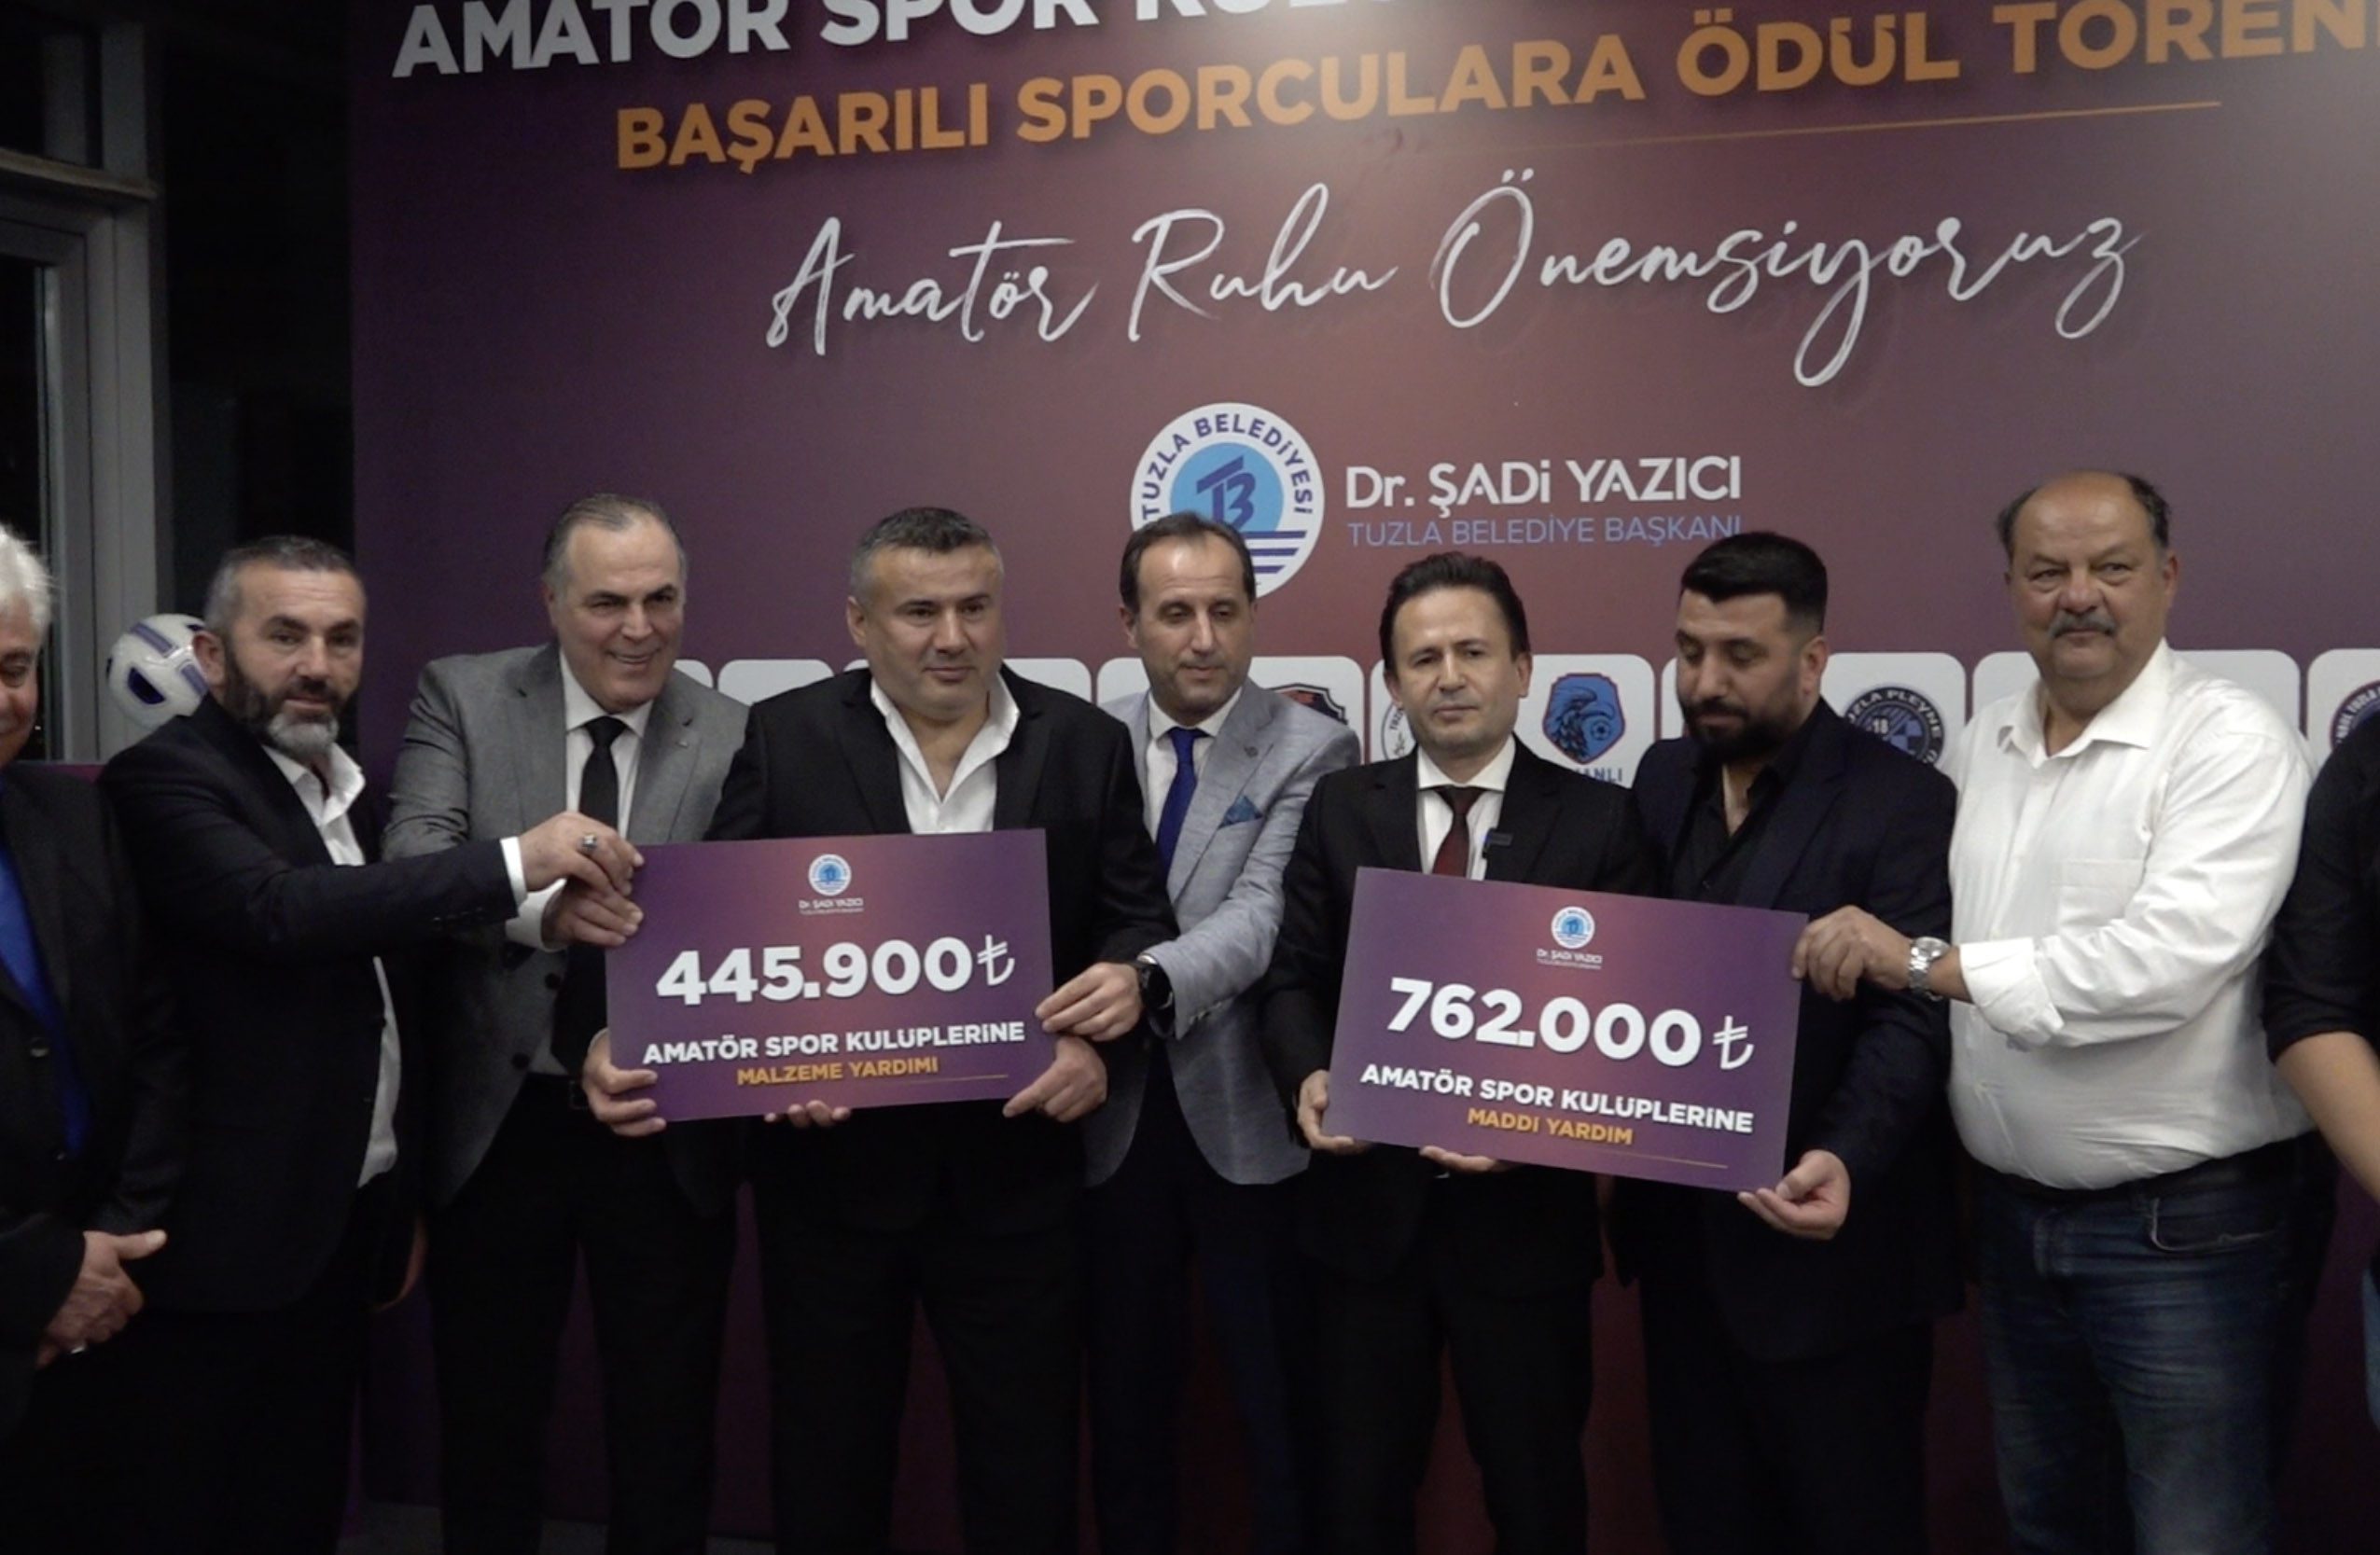 Tuzla Belediyesi’nden amatör spora 2,3 milyonluk katkı